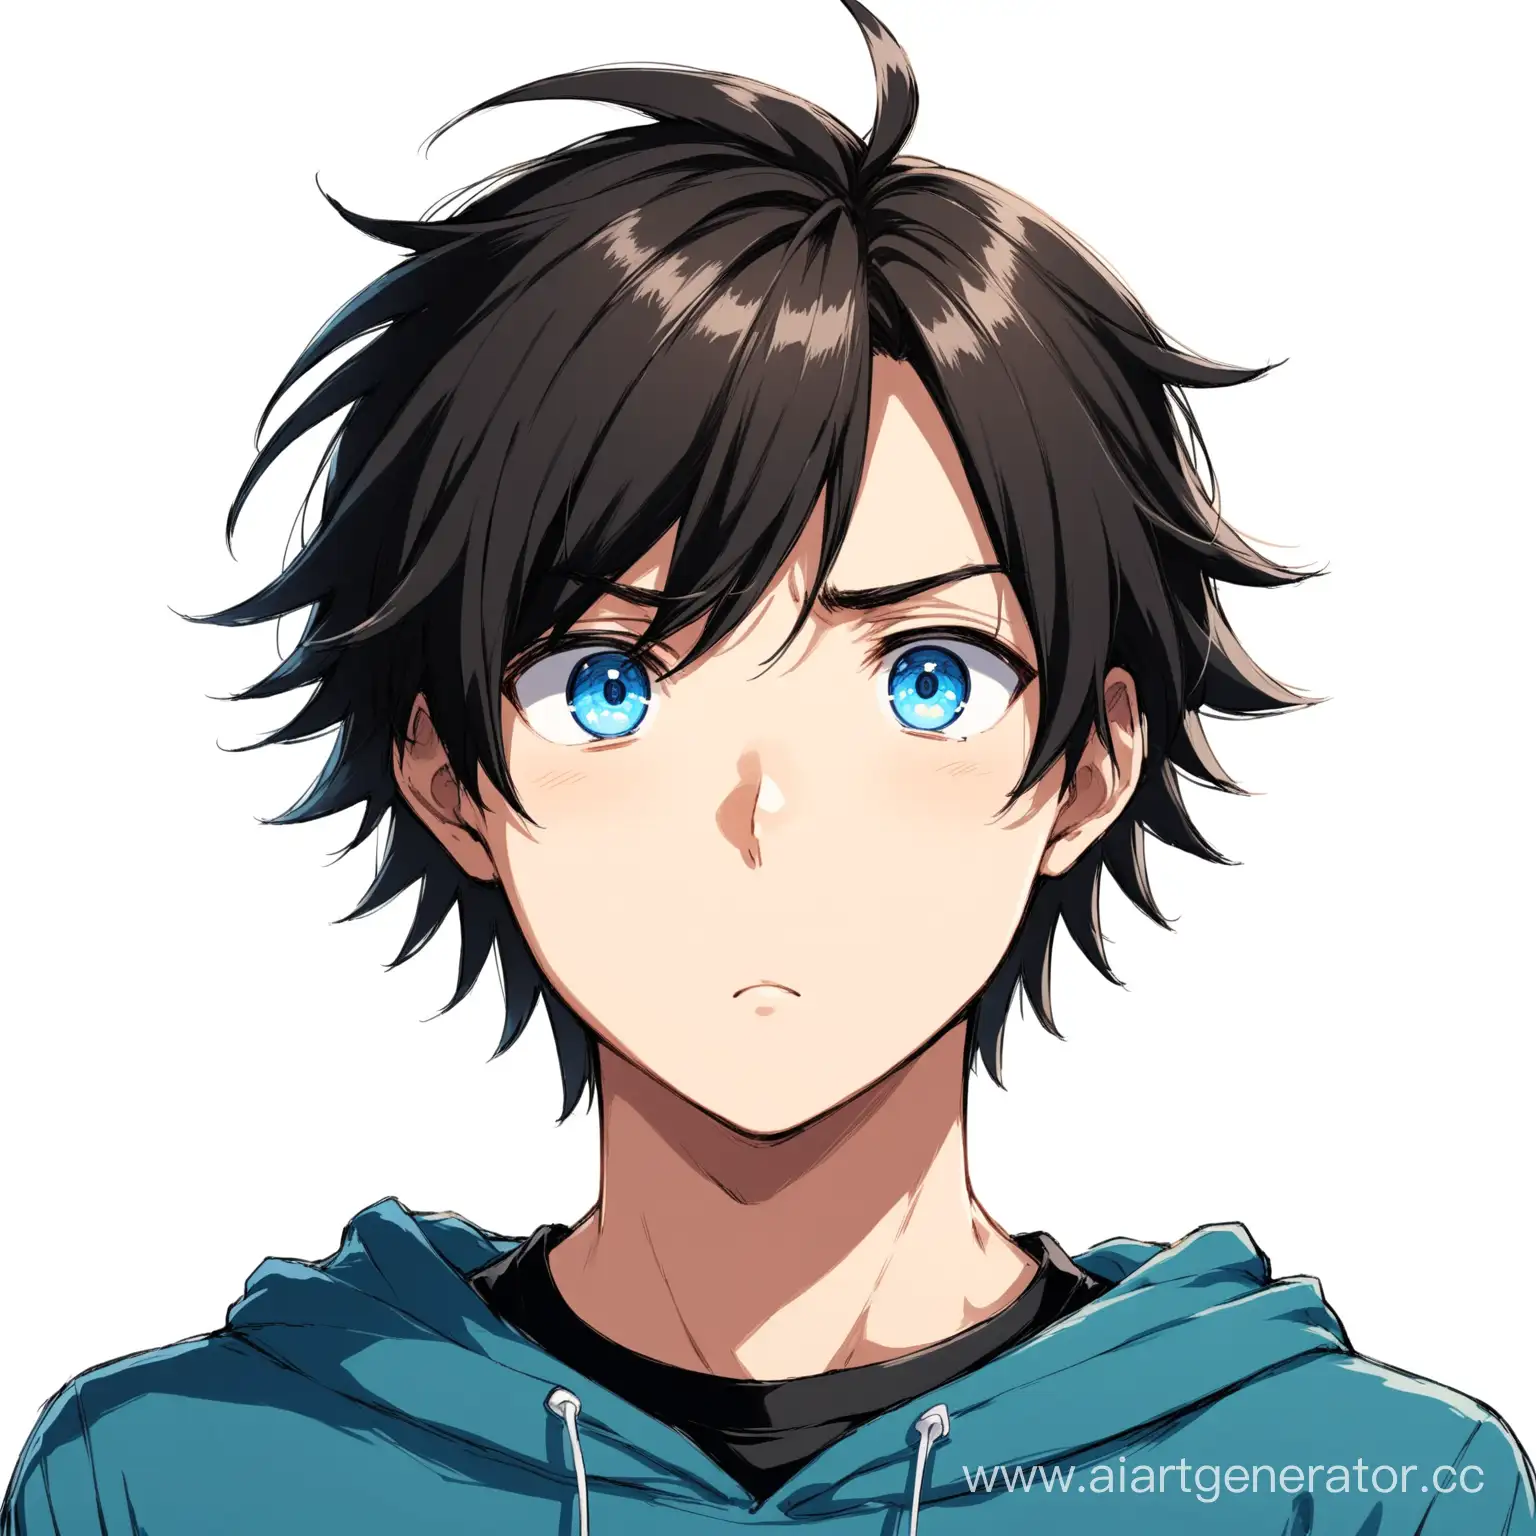 Аниме персонаж, парень с темными взъерошенными волосами и голубыми глазами, в черной футболке и в синем худи, приятно удивленное лица даже слегка смущенное, изолированный объект,  чтобы его было видно полностью и на белом фоне.